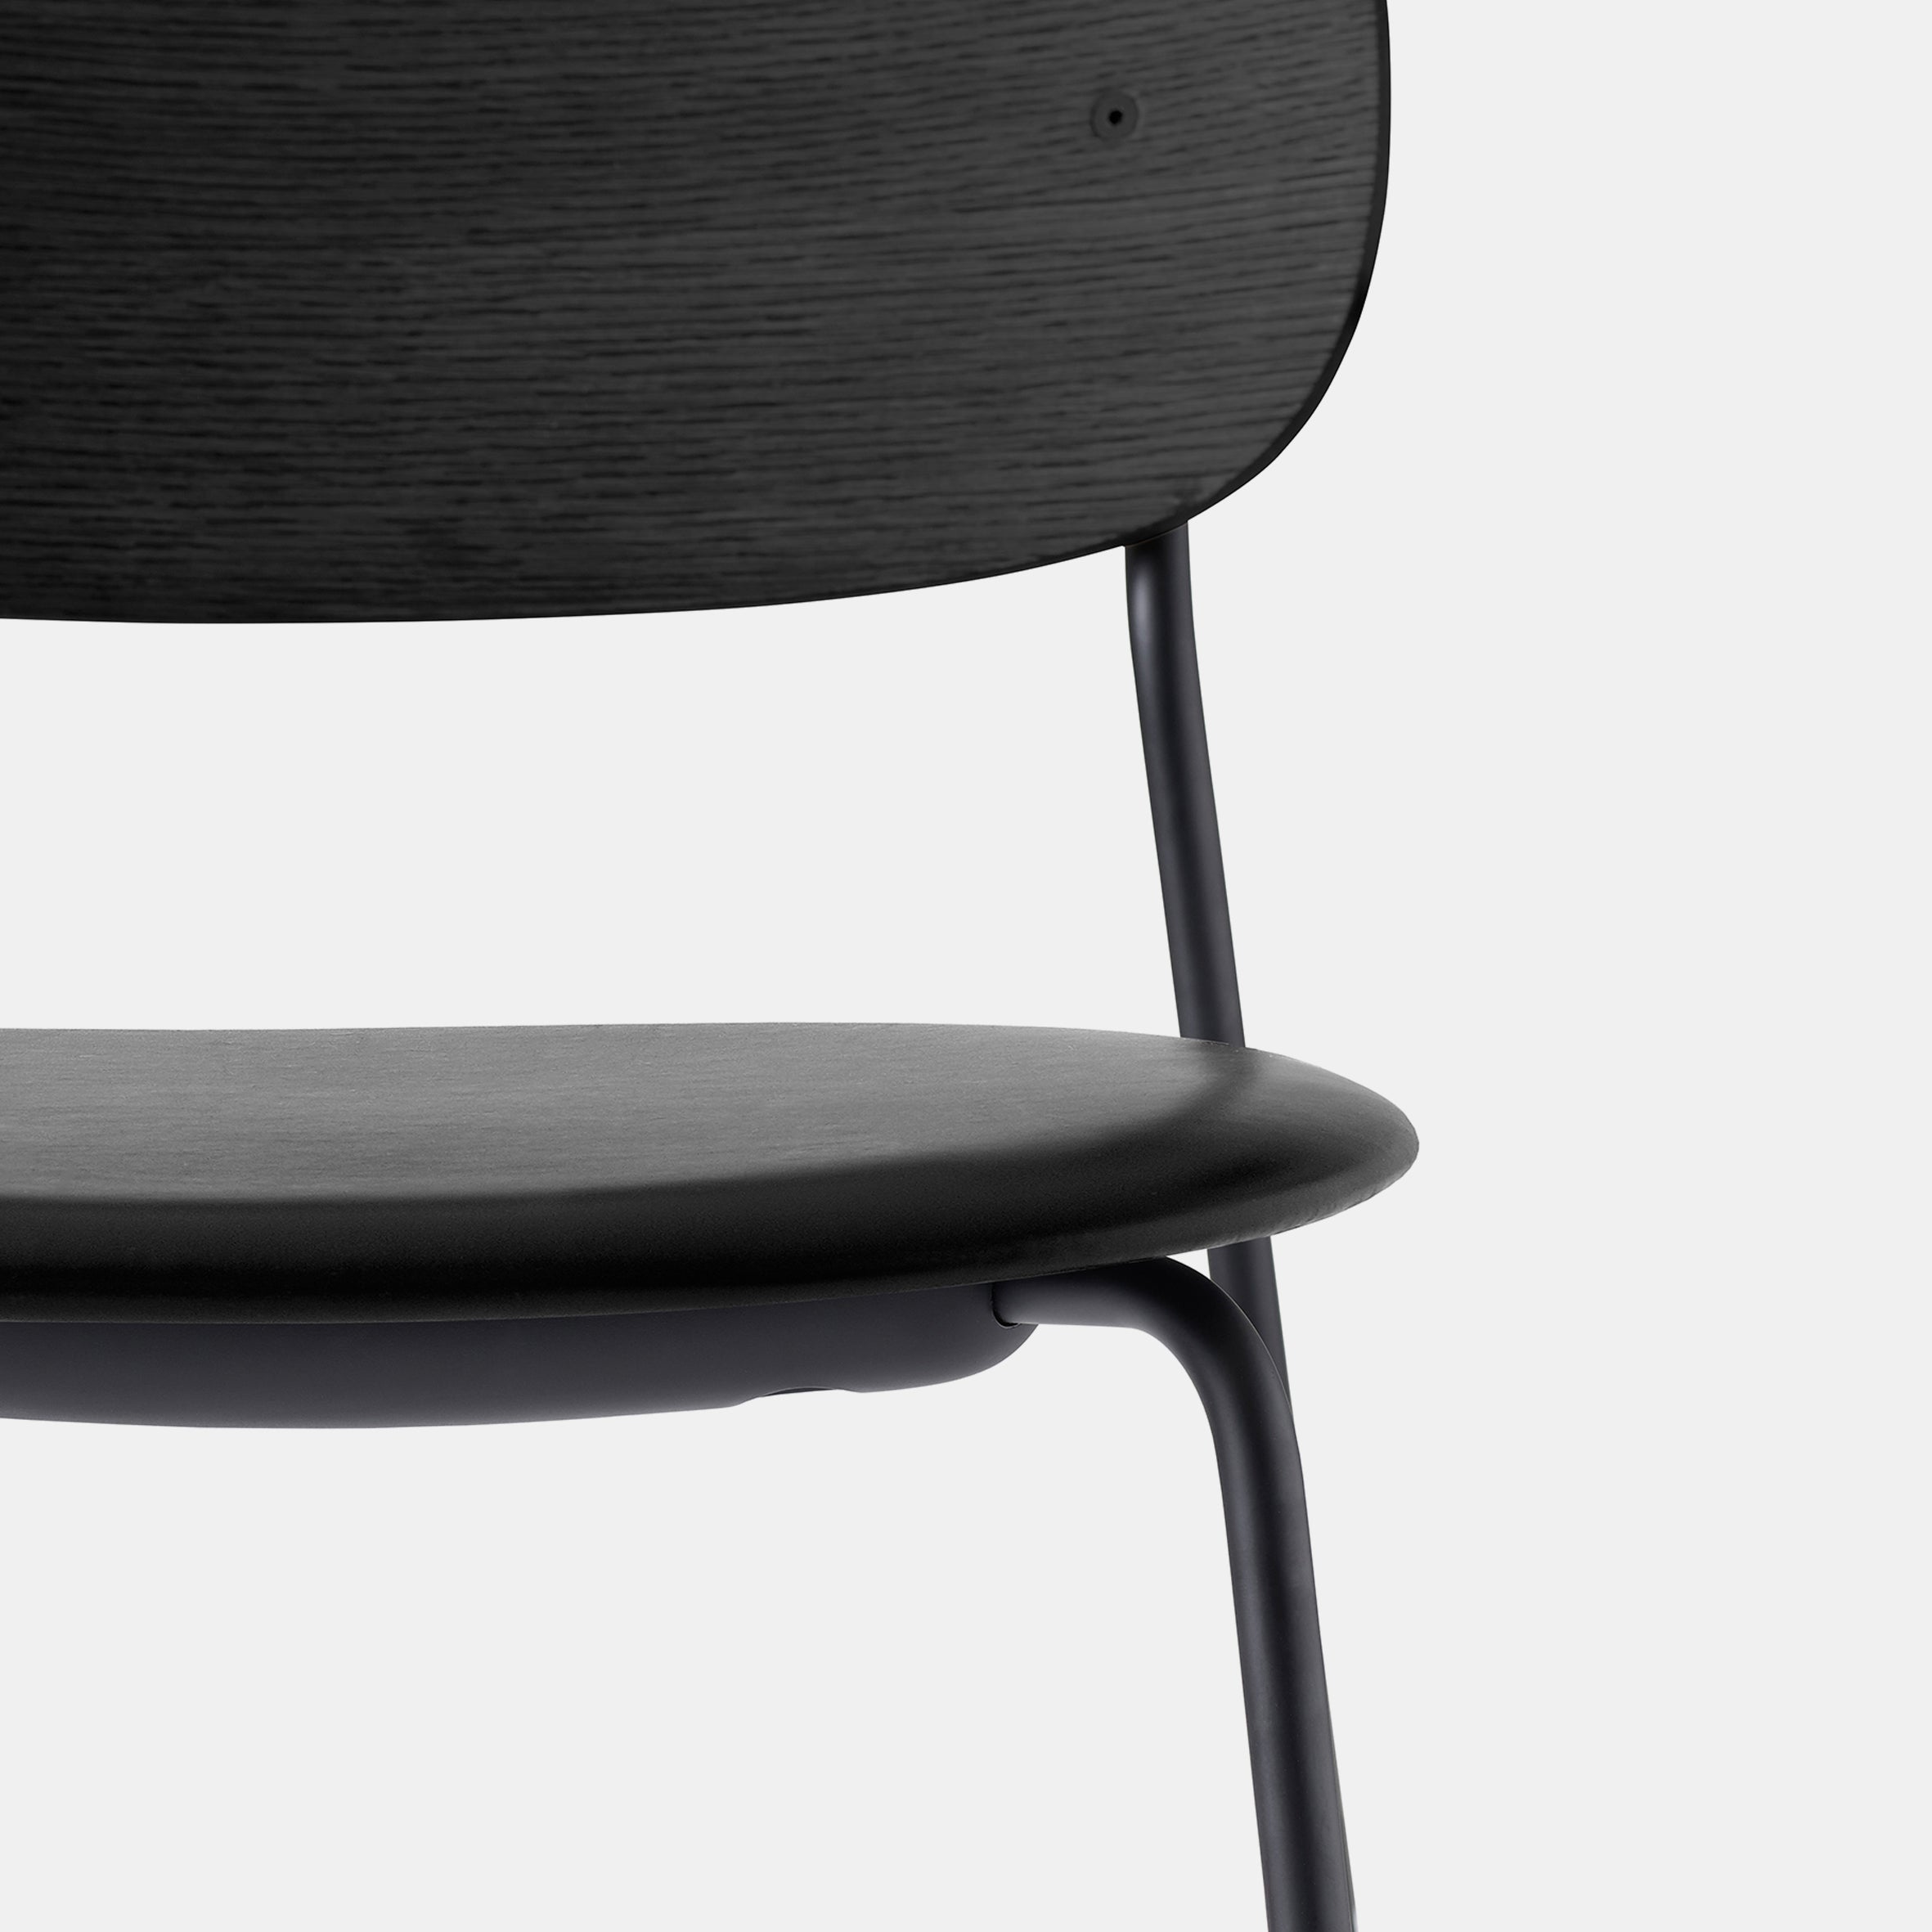 Co Upholstered Chair - Black Oak